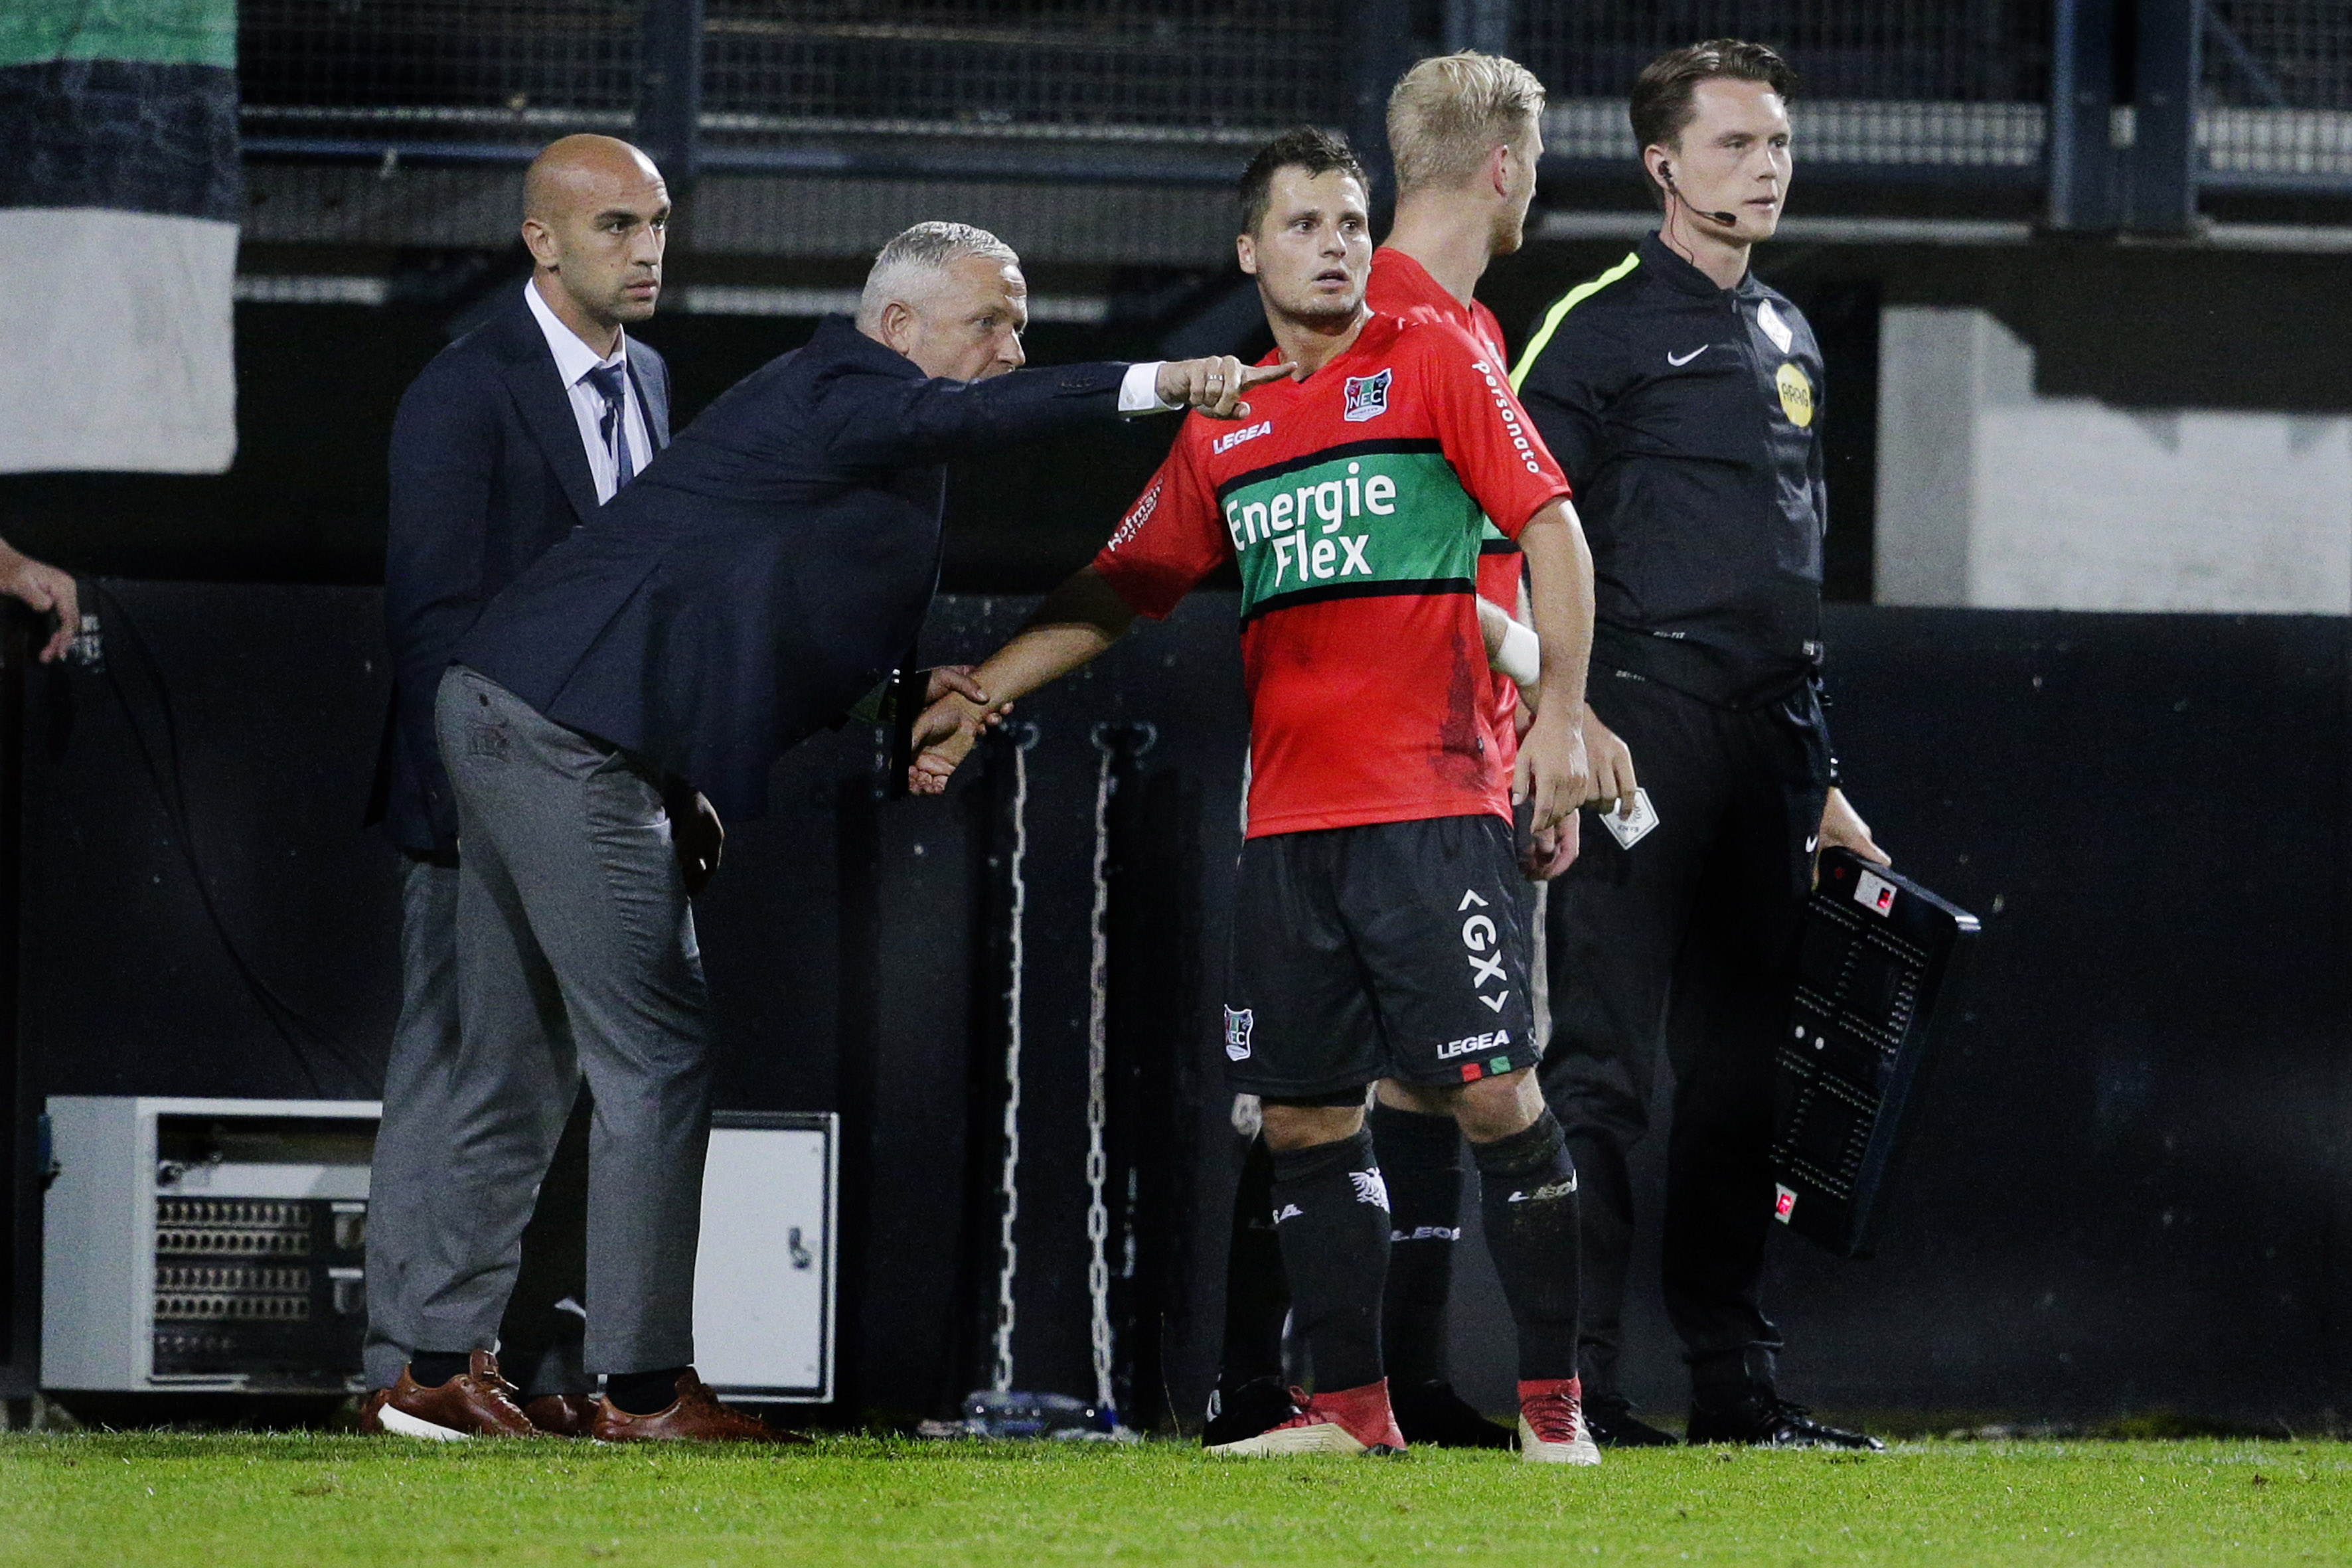   Jack de Gier: ‘Laten we Jong PSV vooral niet onderschatten.’ 